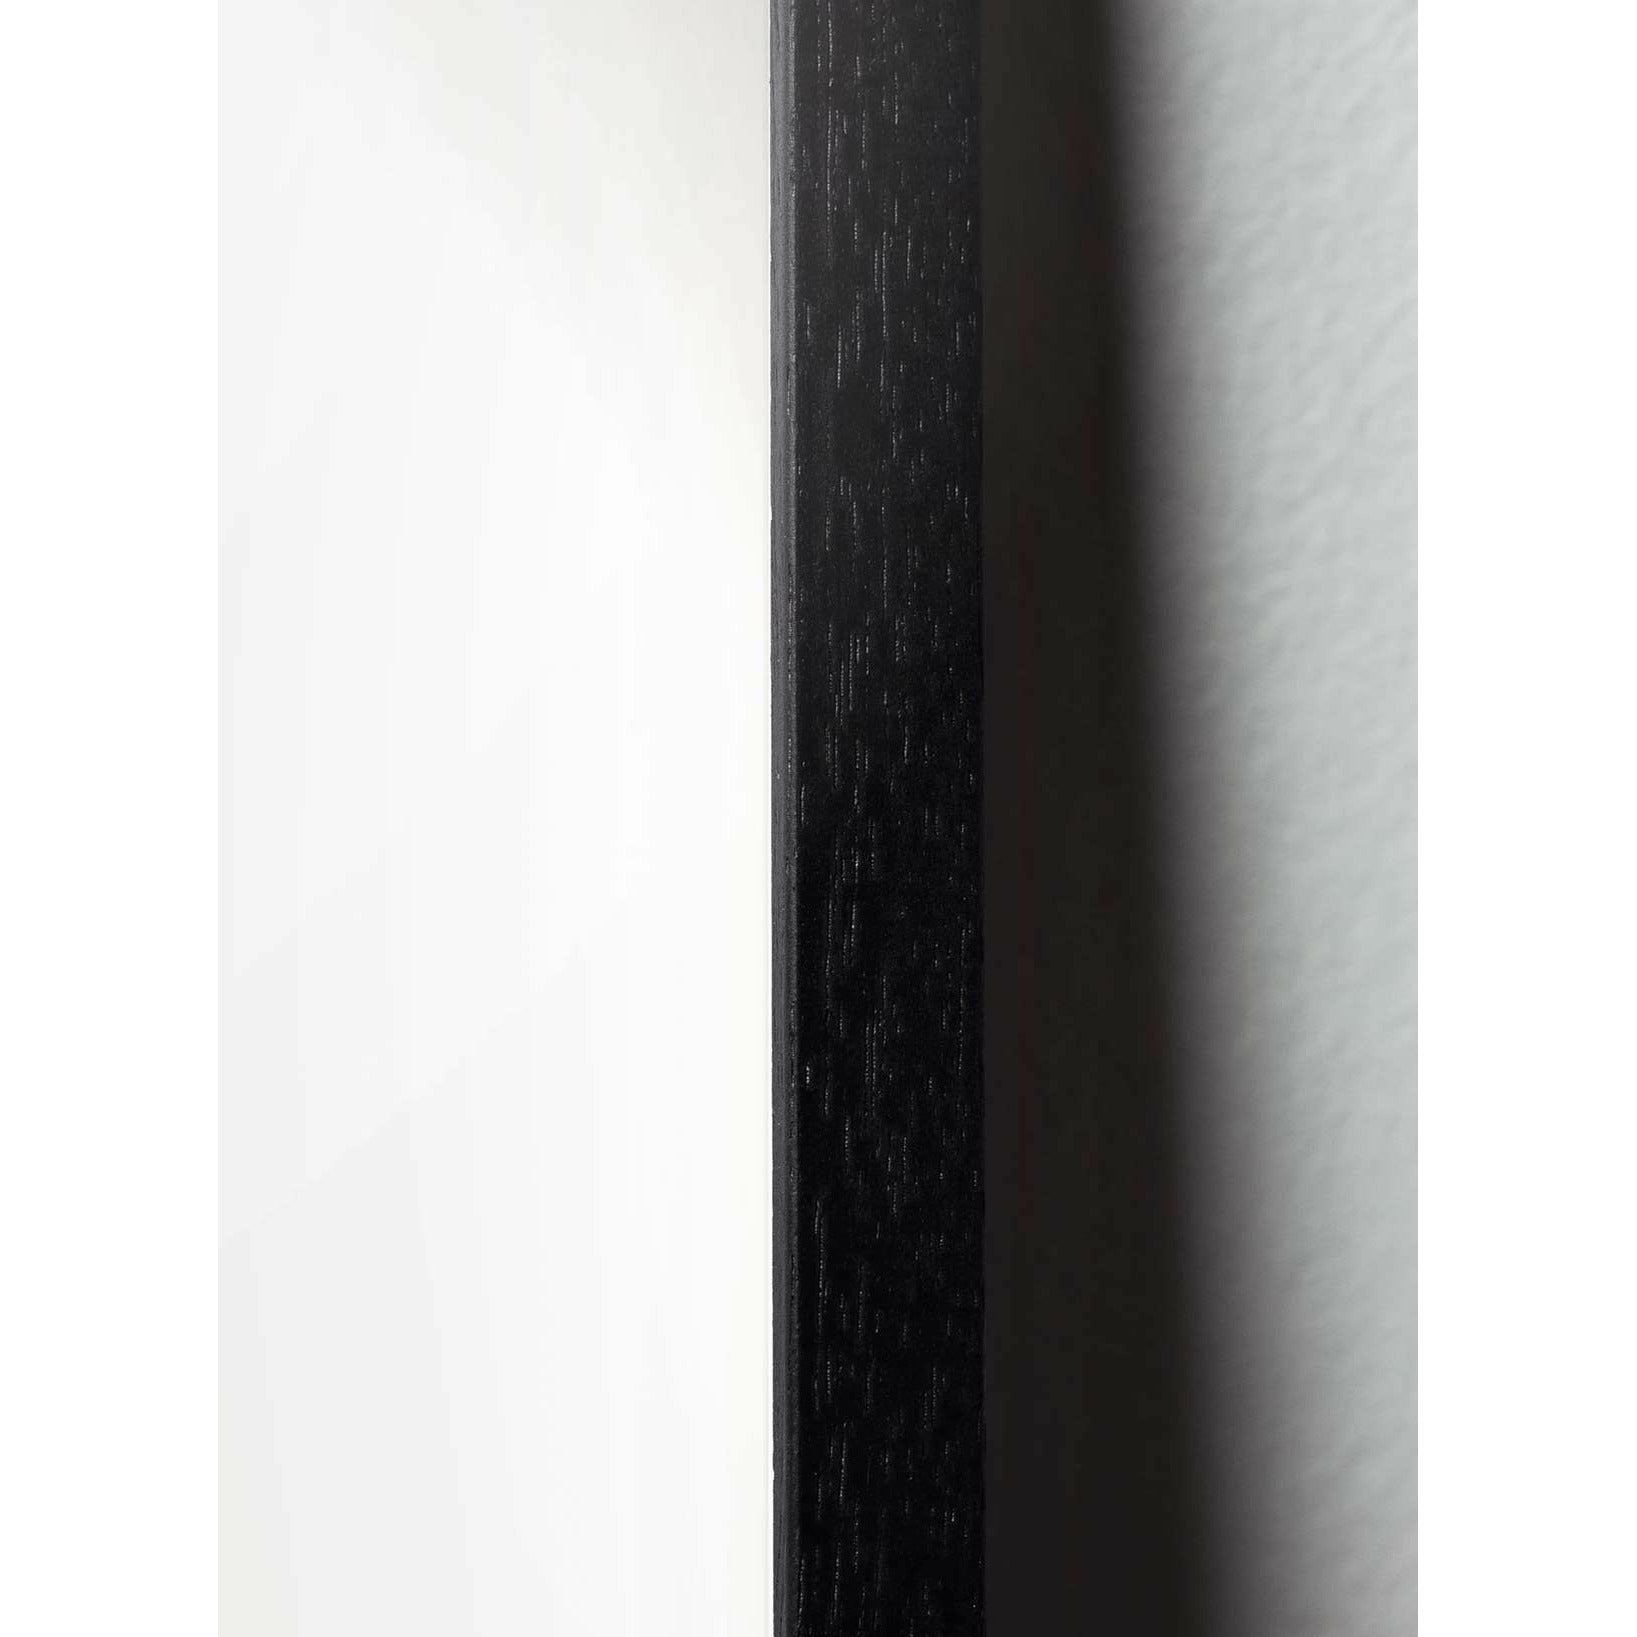 Póster clásico de cono de pino de creación, marco en madera lacada negra A5, fondo rojo